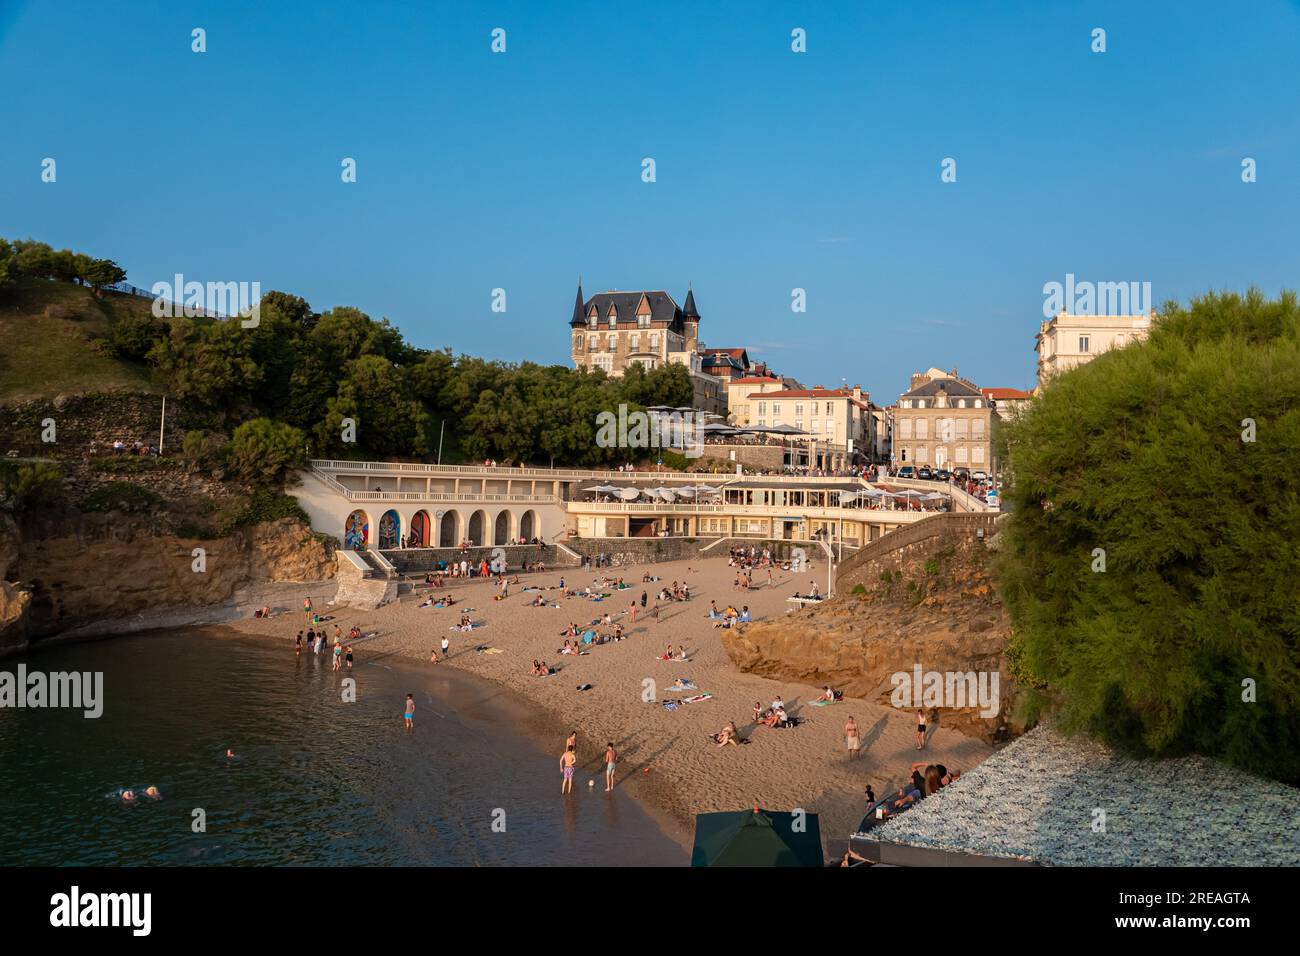 La spiaggia di Biarritz "Plage du Port Vieux" è piena di persone che fanno il bagno e prendono il sole in un pomeriggio d'estate. Foto Stock